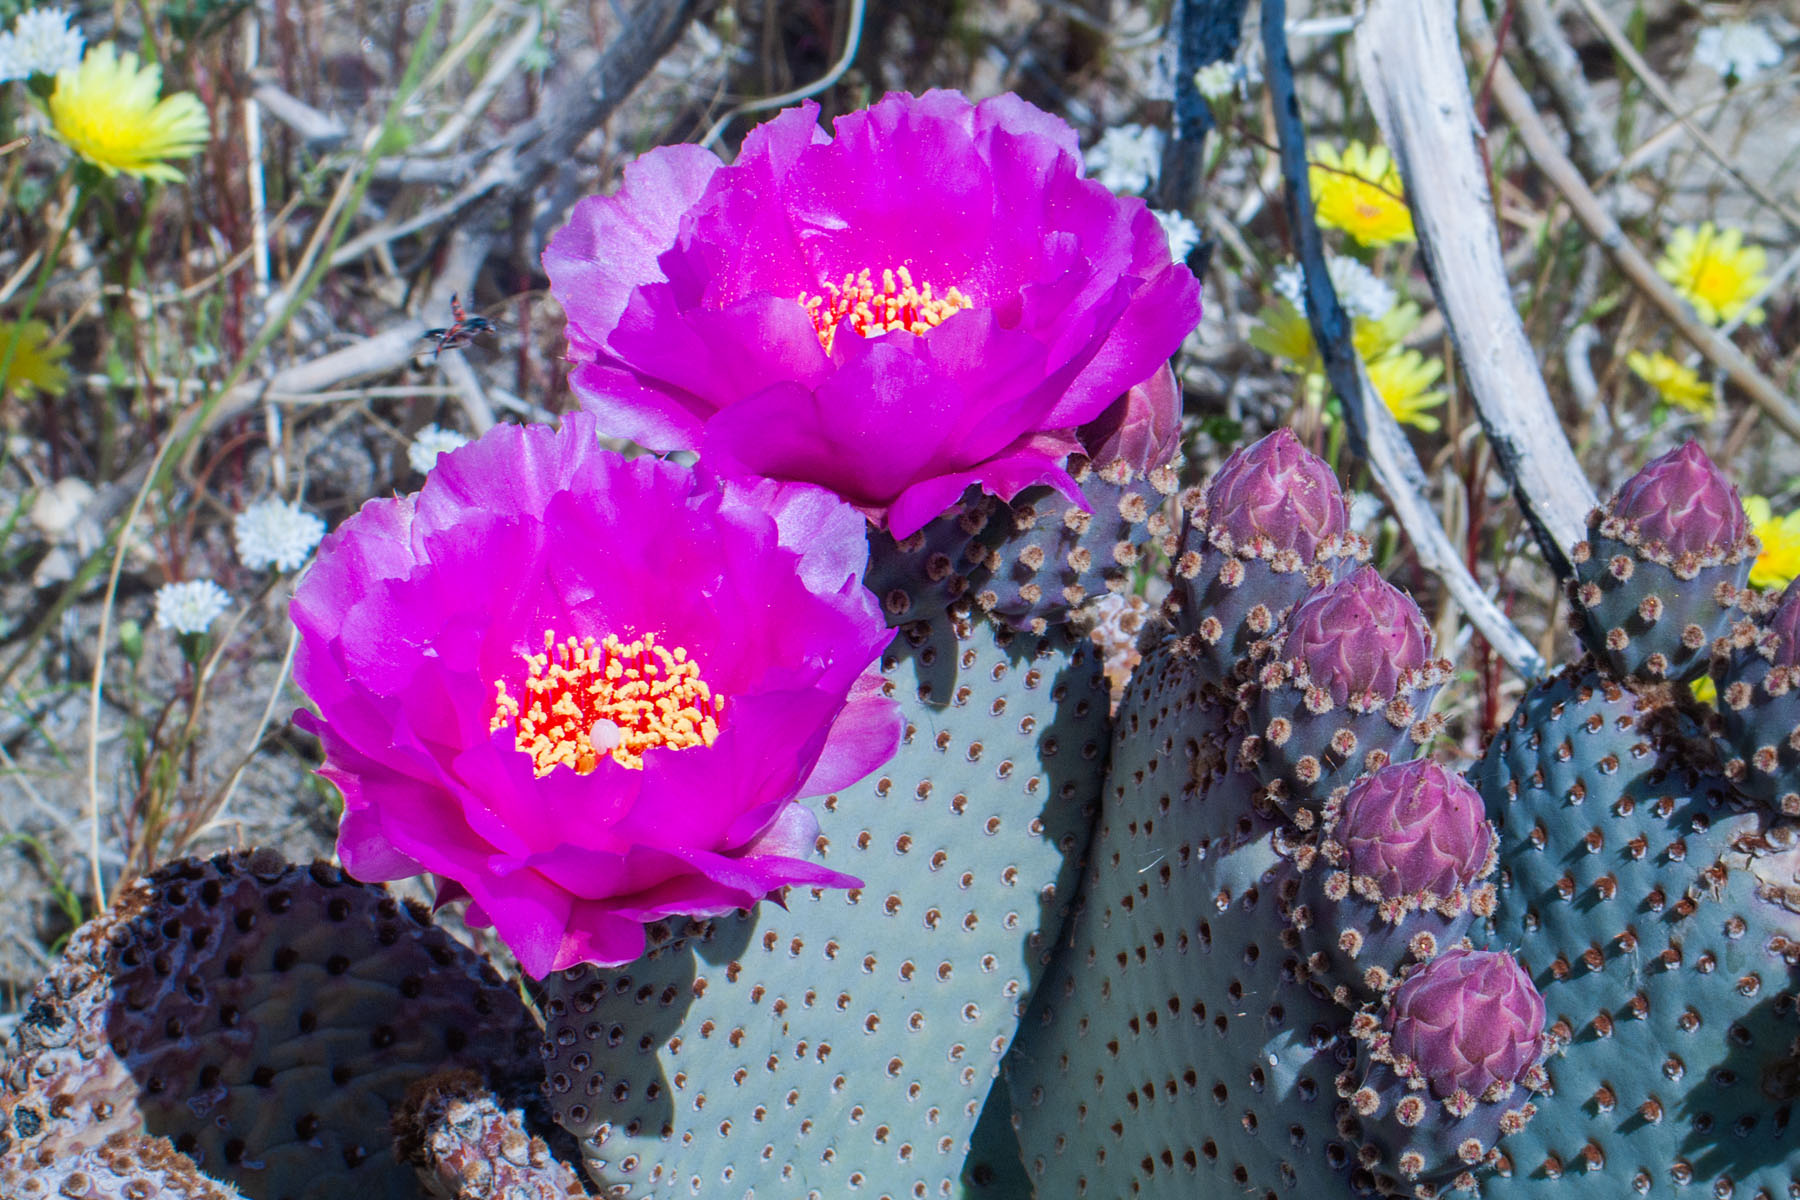 Cactus flowers, Borrego Springs, California.  Click for next photo.